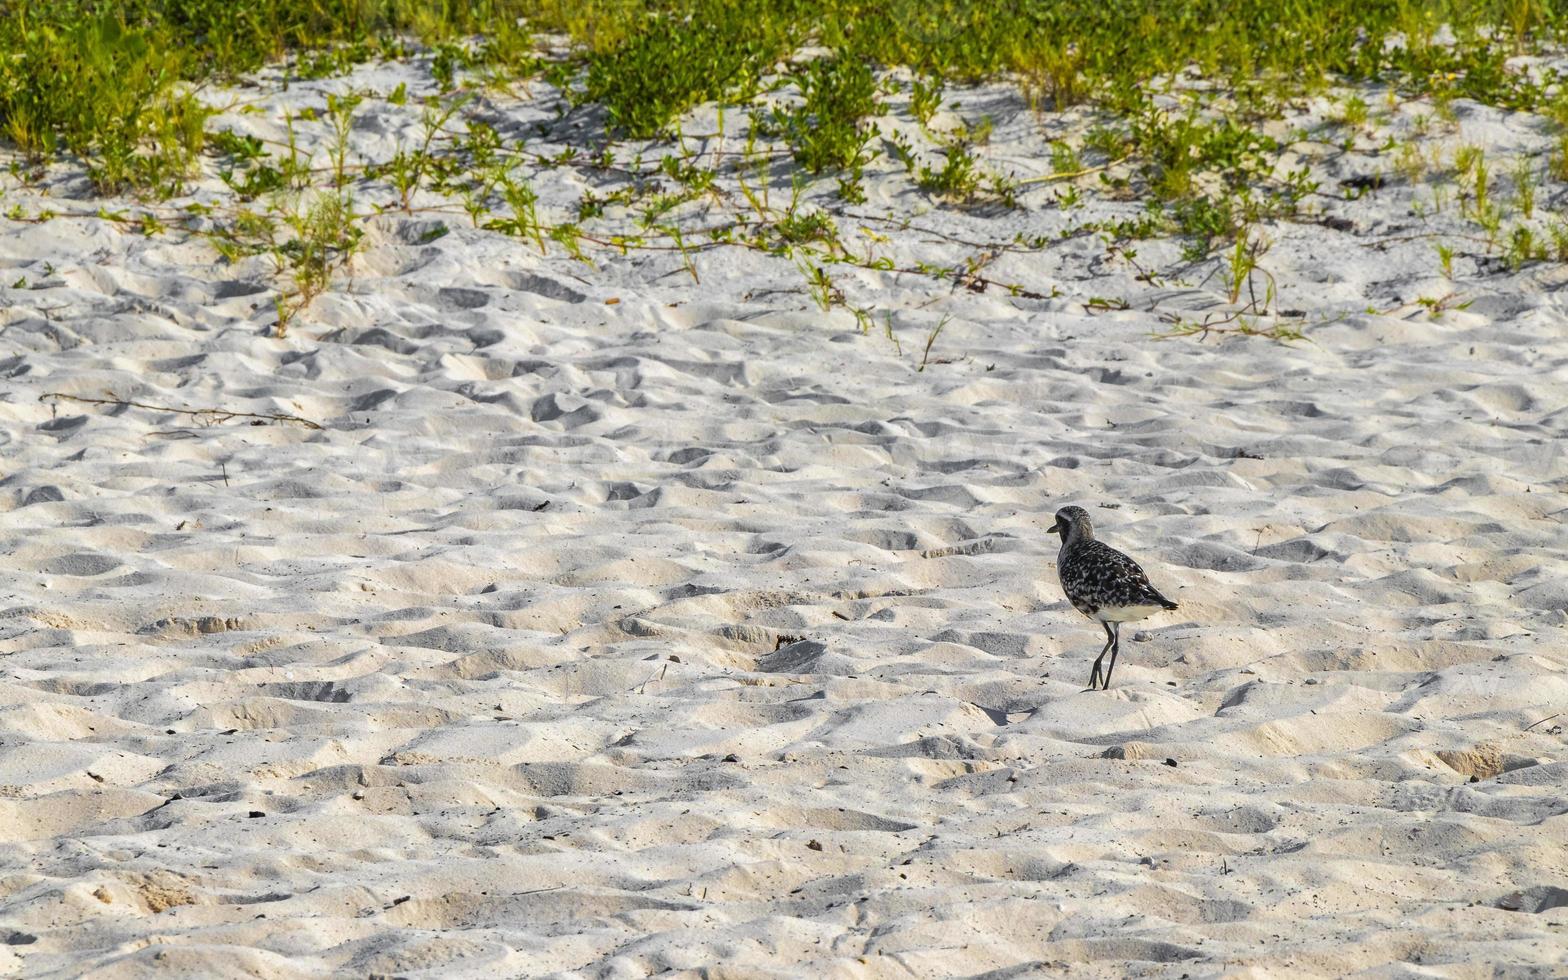 strandloper watersnip strandlopers vogel vogelstand aan het eten sargazo Aan strand Mexico. foto